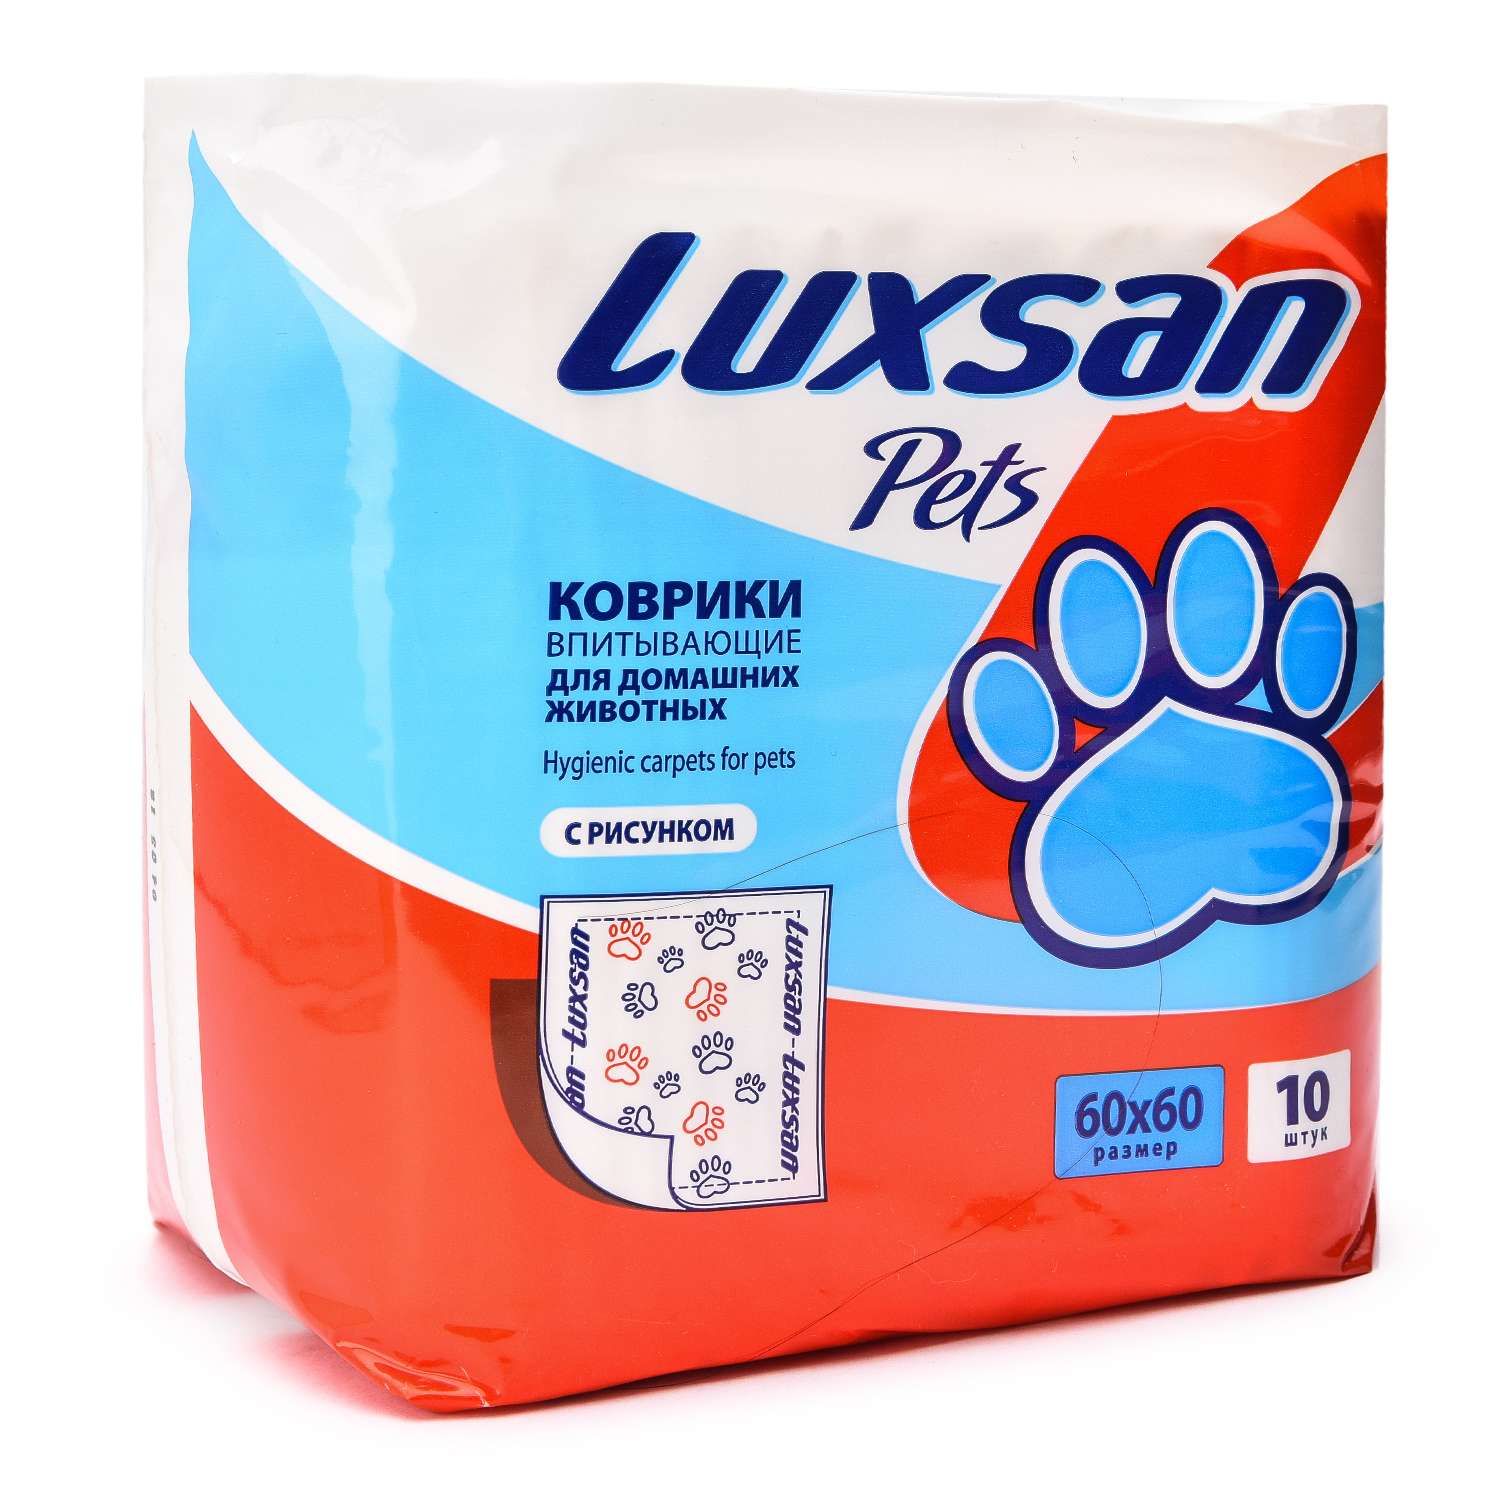 Коврики для животных Luxsan Pets впитывающие 60*60см 10шт - фото 1